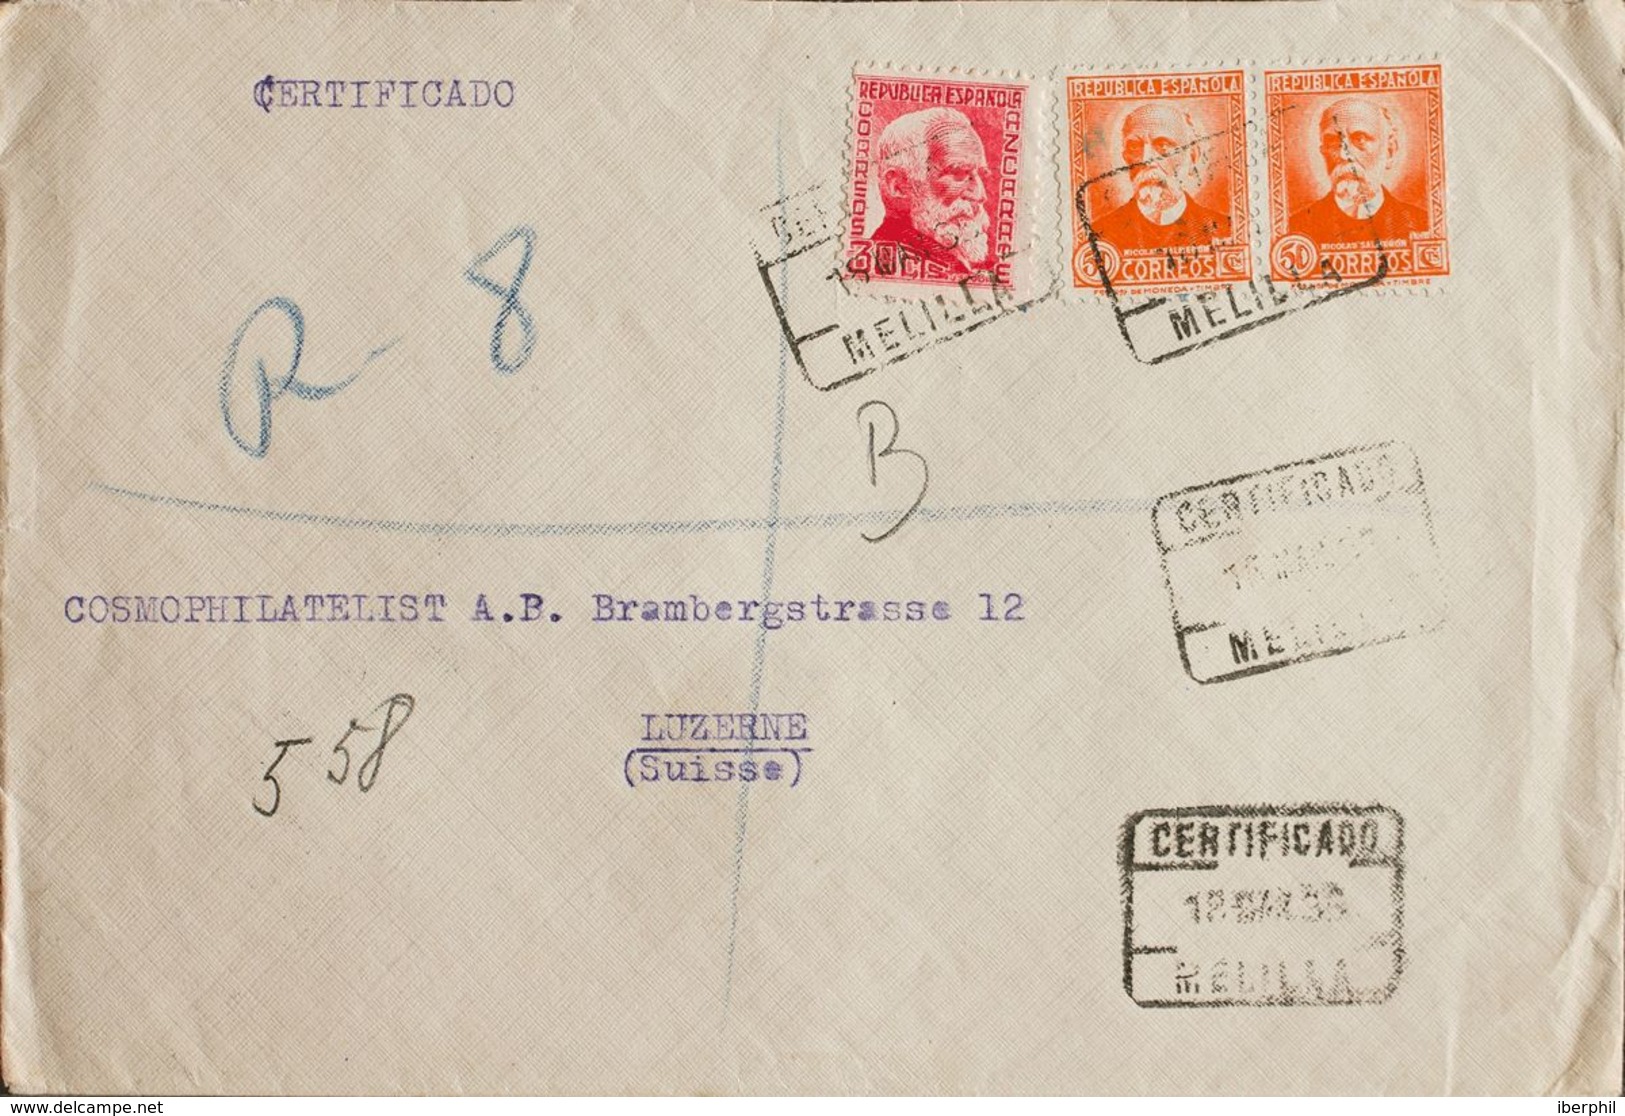 España. República Española Correo Certificado. Sobre 686, 671(2). 1935. 30 Cts Rosa Y 50 Cts Naranja, Dos Sellos. Certif - Briefe U. Dokumente